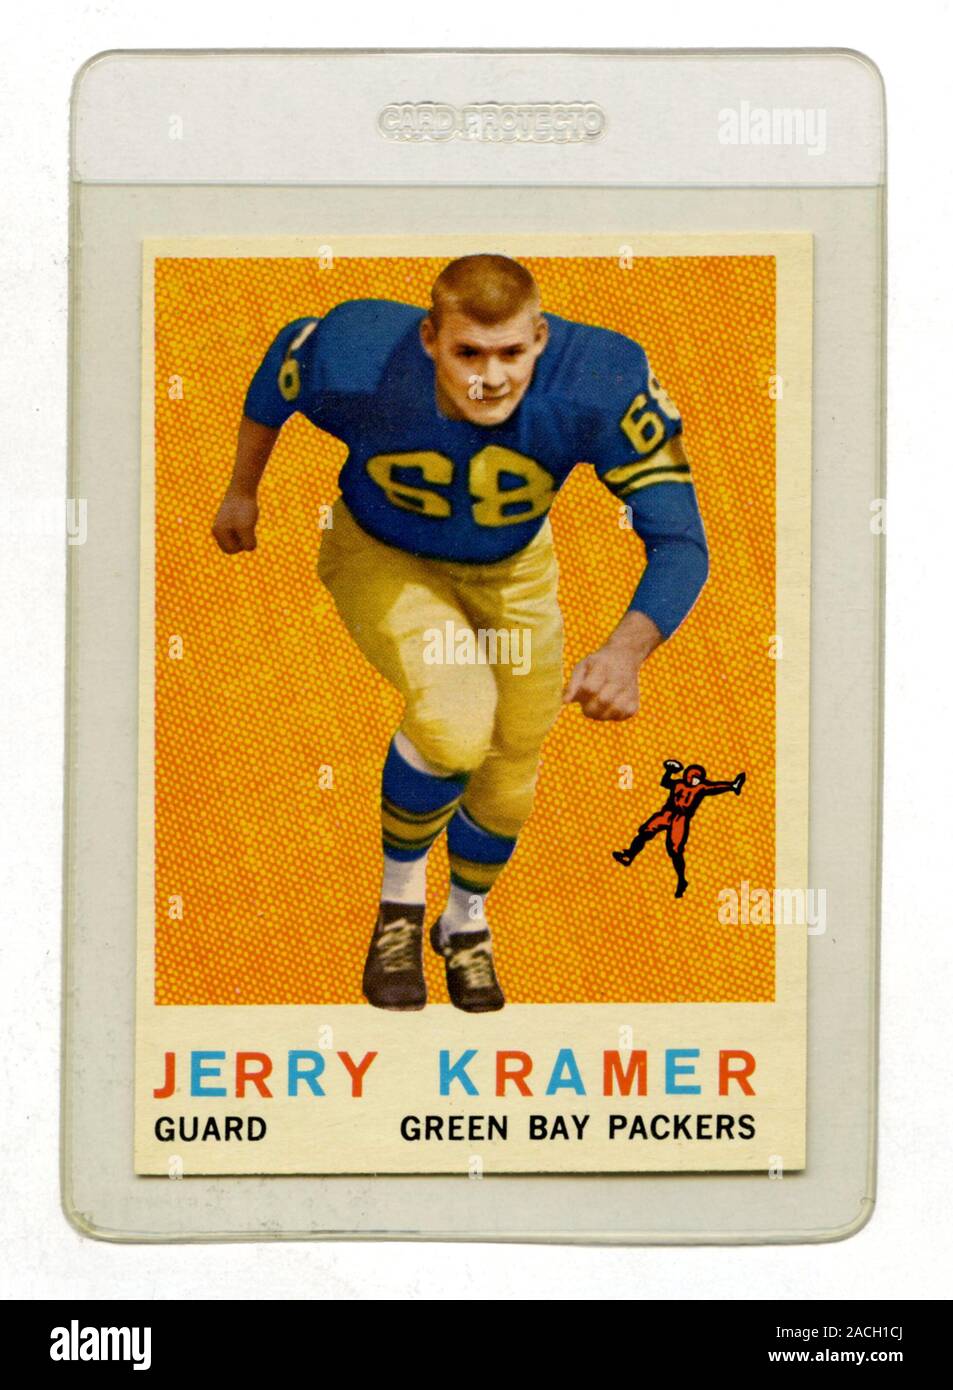 Klassische Fußballkarte mit Jerry Kramer, einem Wächter mit den Green Bay Packers, die Topps 1959 herausgegeben hat Stockfoto